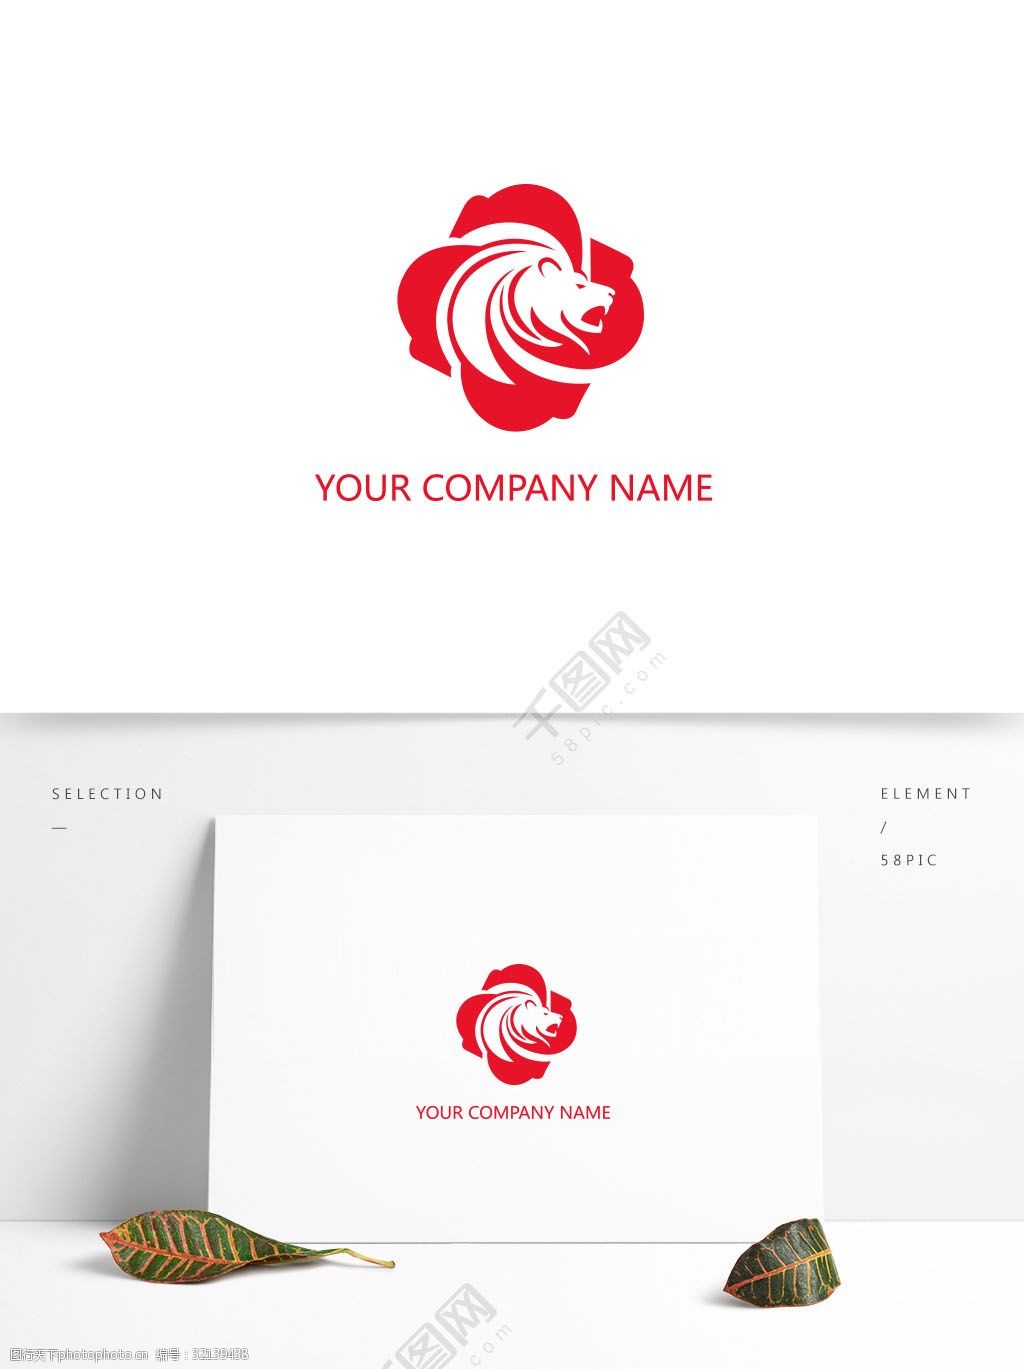 关键词:红色矢量老虎标志 动物 颜色 虎 企业 公司 品牌 抽象图案